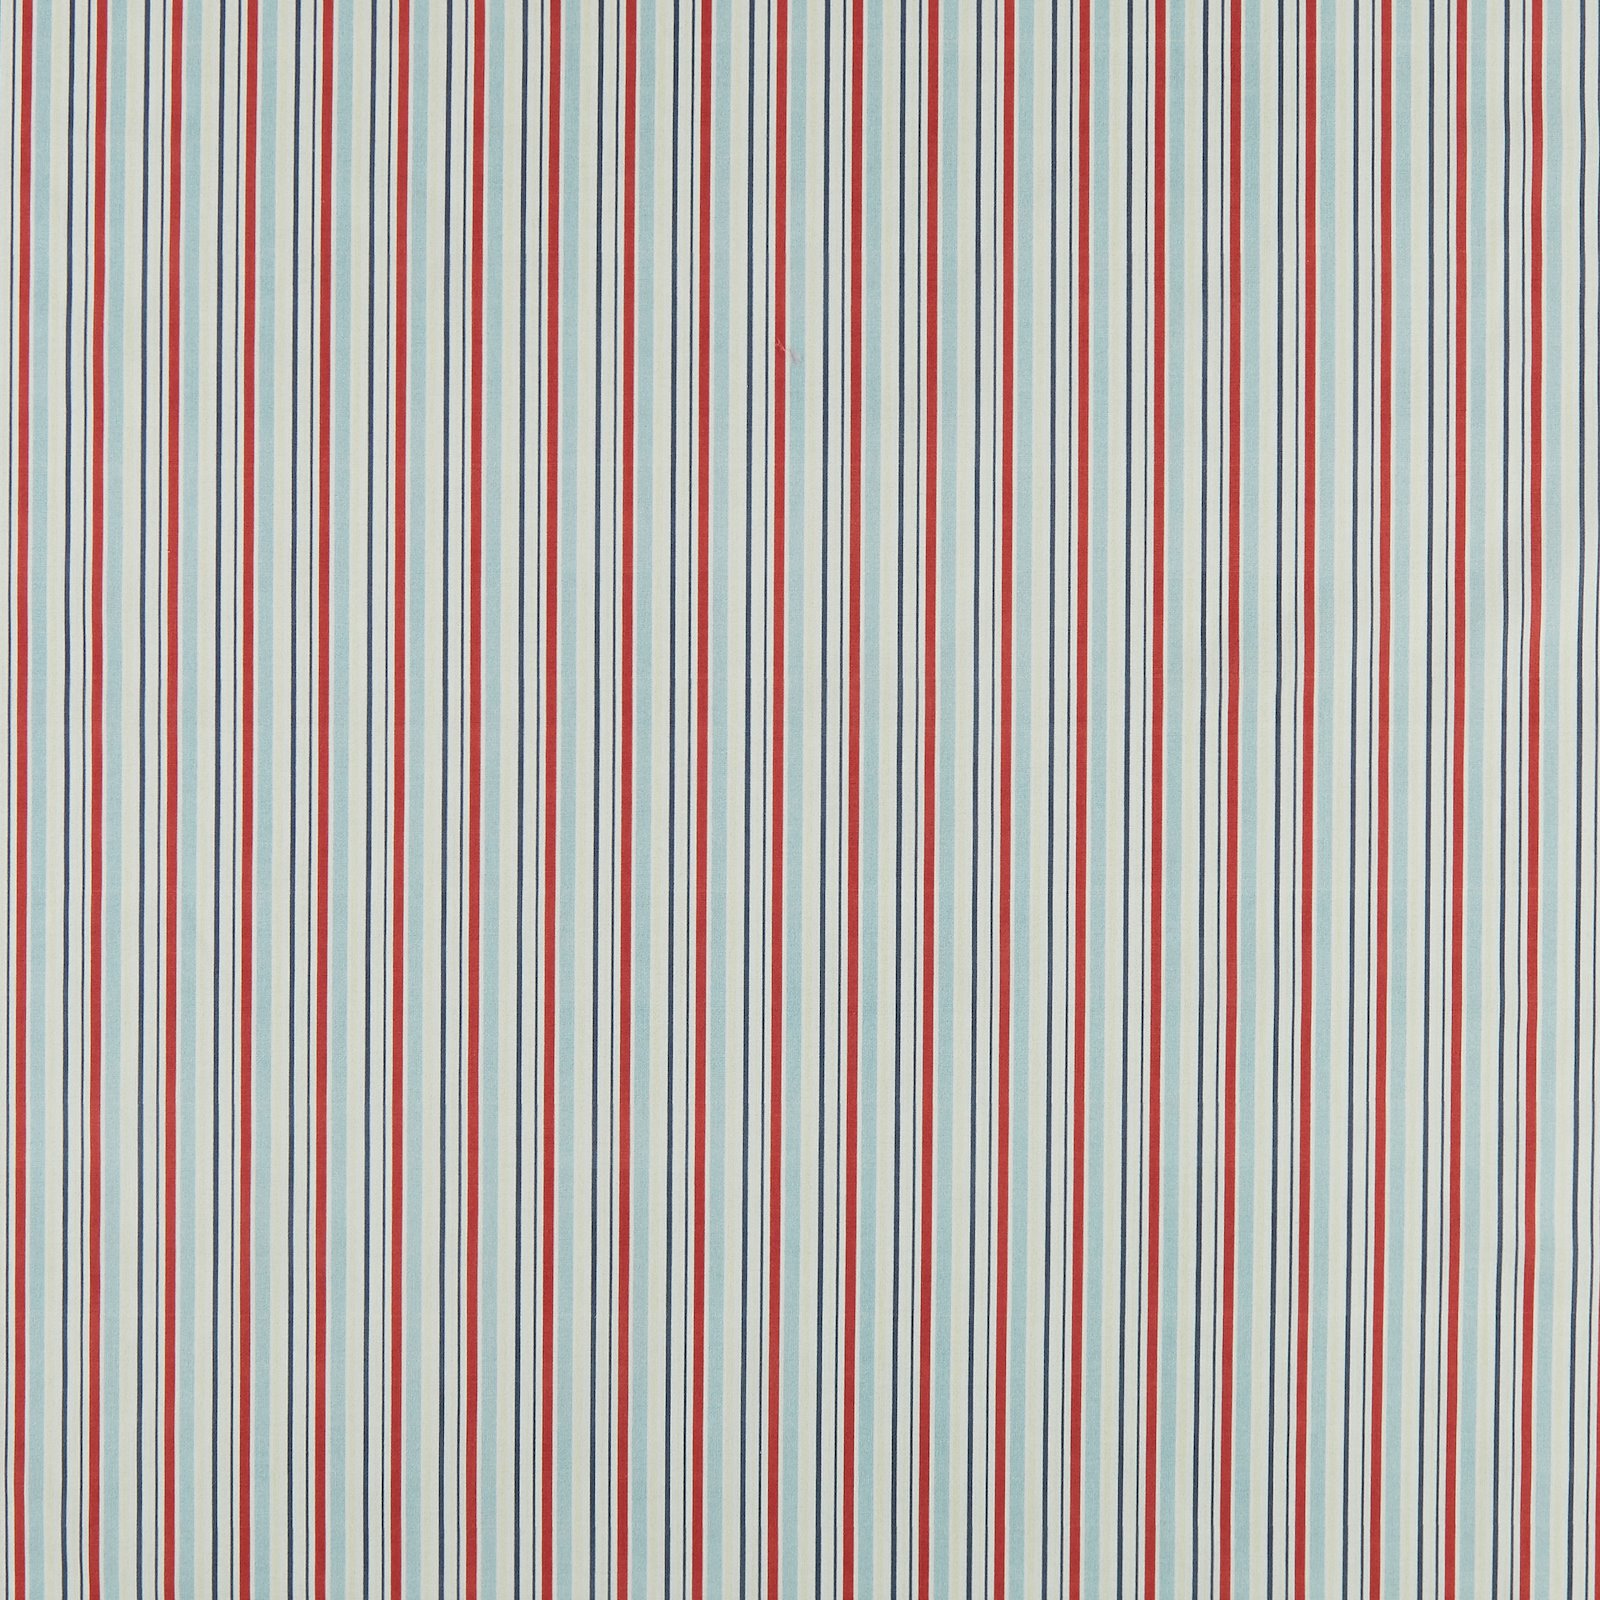 BCI cotton maritim stripe blue/red/white 780950_pack_sp